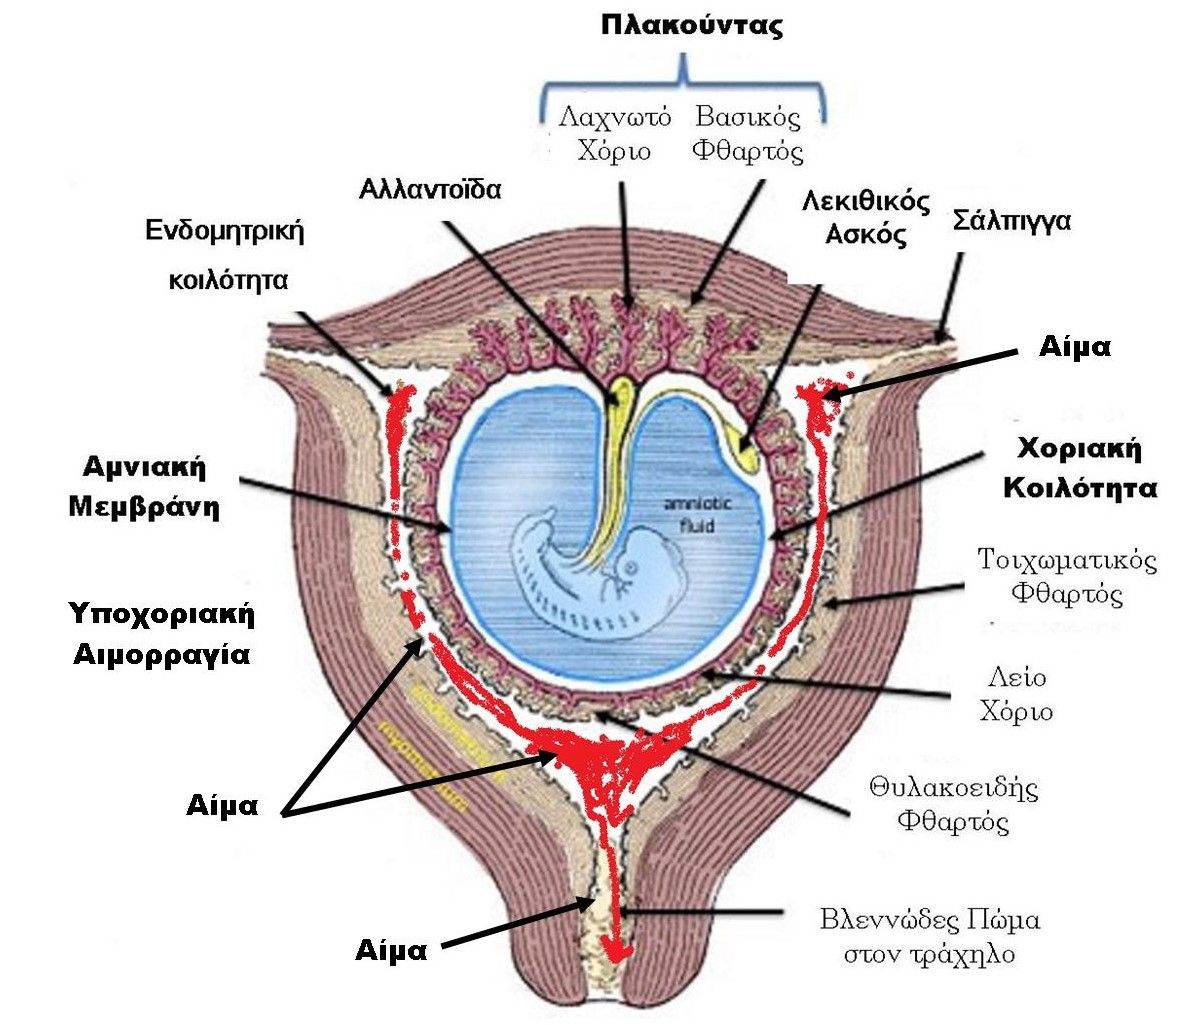 Υποχοριακή Αιμορραγία : Έμβρυο 5-6-7-8 εβδομάδων με τις συνοδές δομές